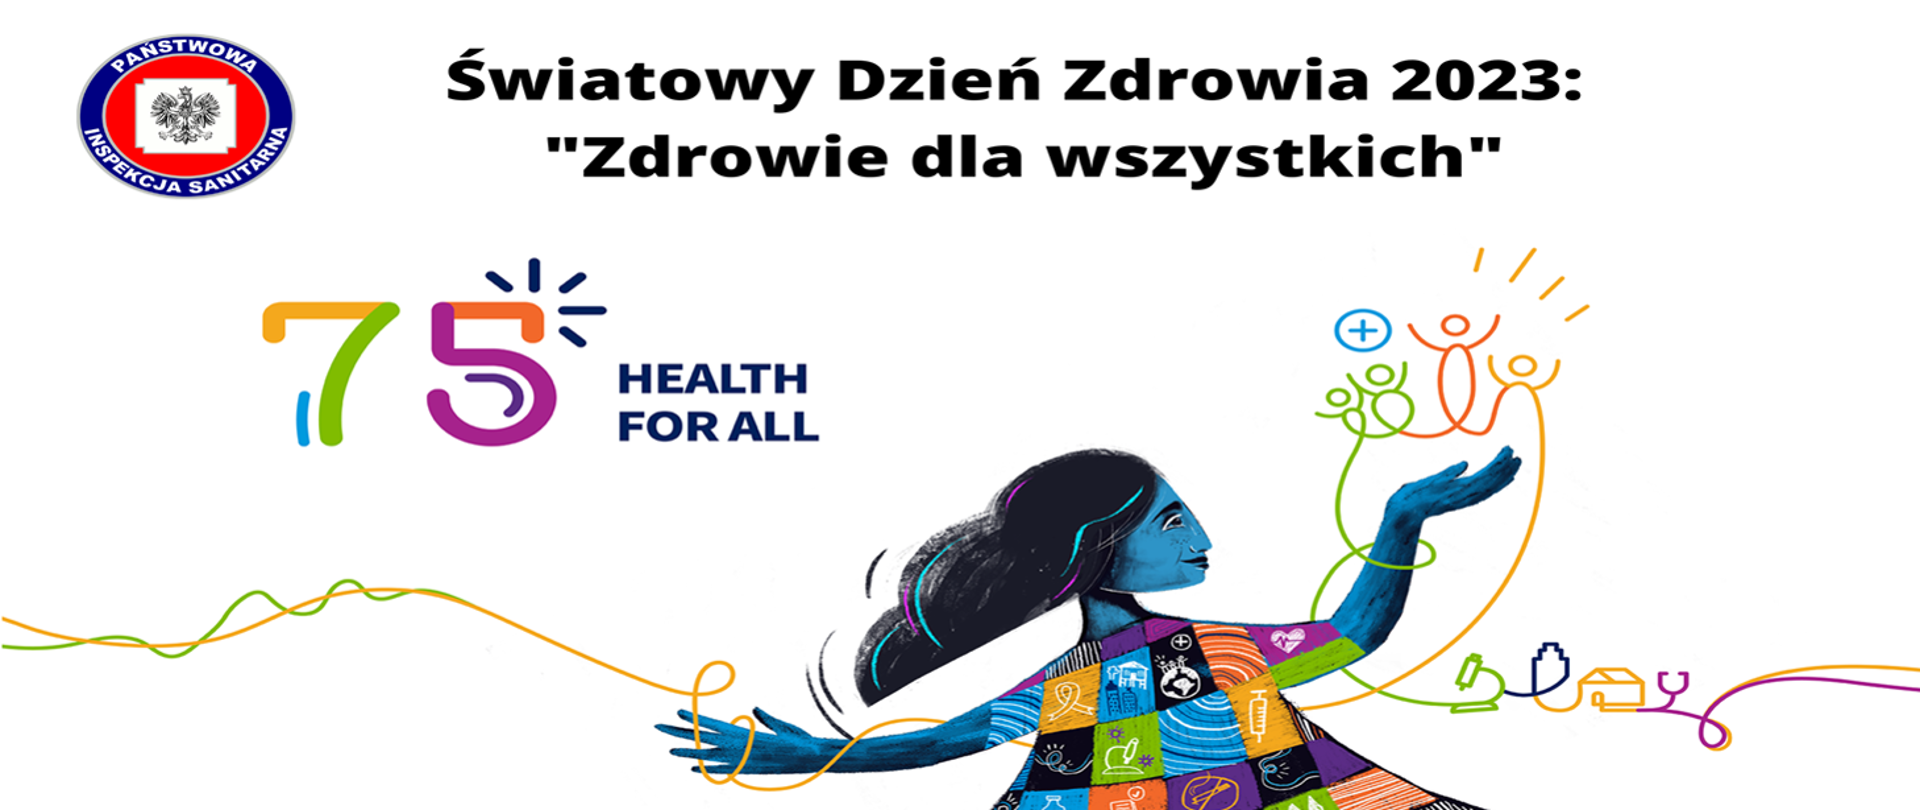 Grafika przedstawia kobietę w tle napis Światowy dzień Zdrowia 2023 "Zdrowie dla wszystkich" oraz 75 Health for All